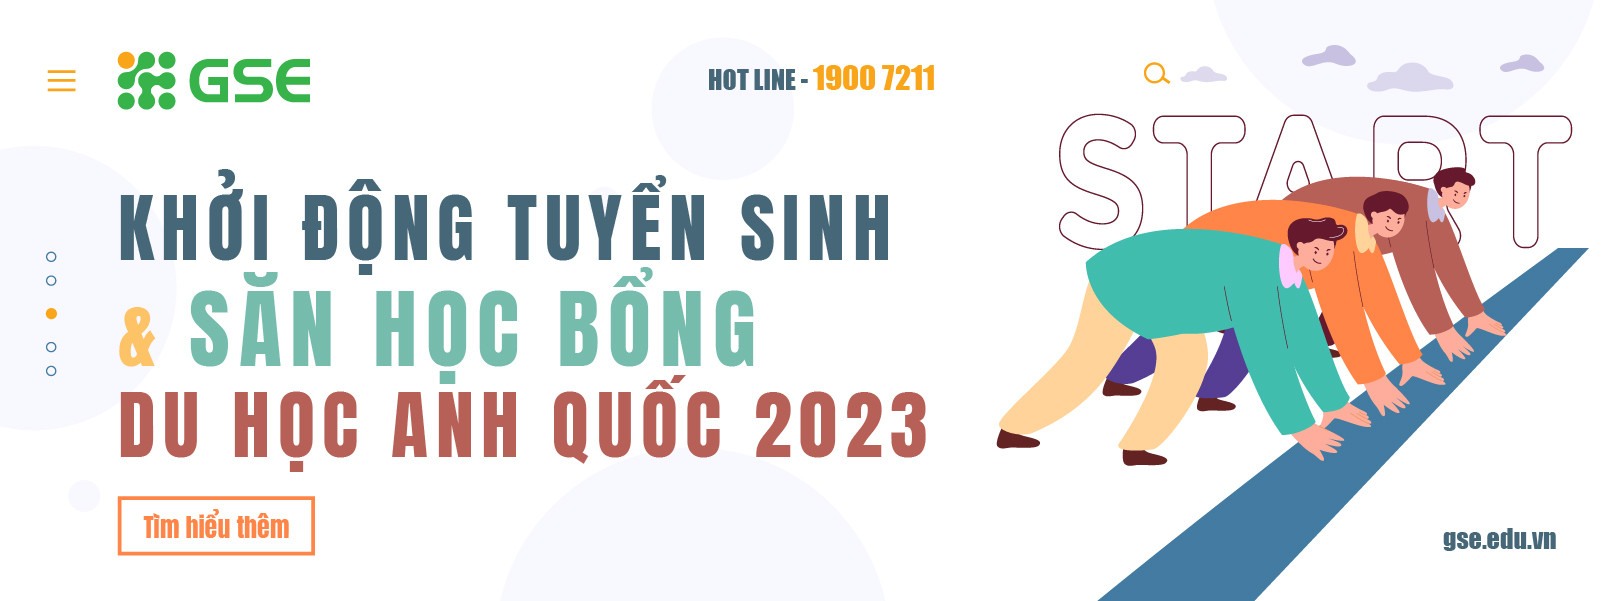 Khoi Dong Du Hoc Anh 2023 Tu Van Du Hoc Gse 1600x600